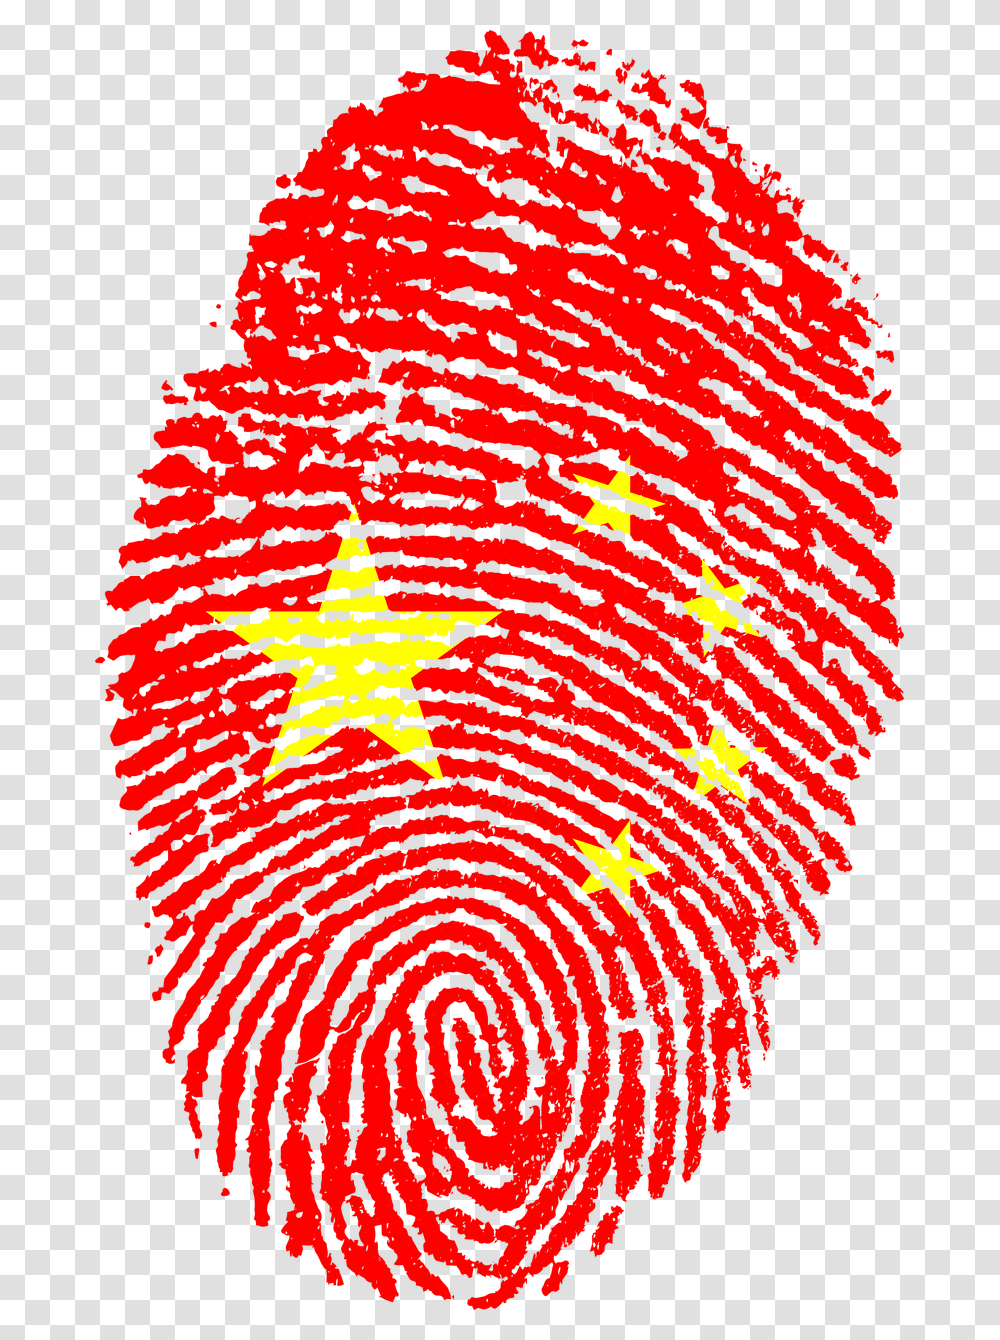 China Flag Fingerprint, Ornament, Pattern, Fractal Transparent Png